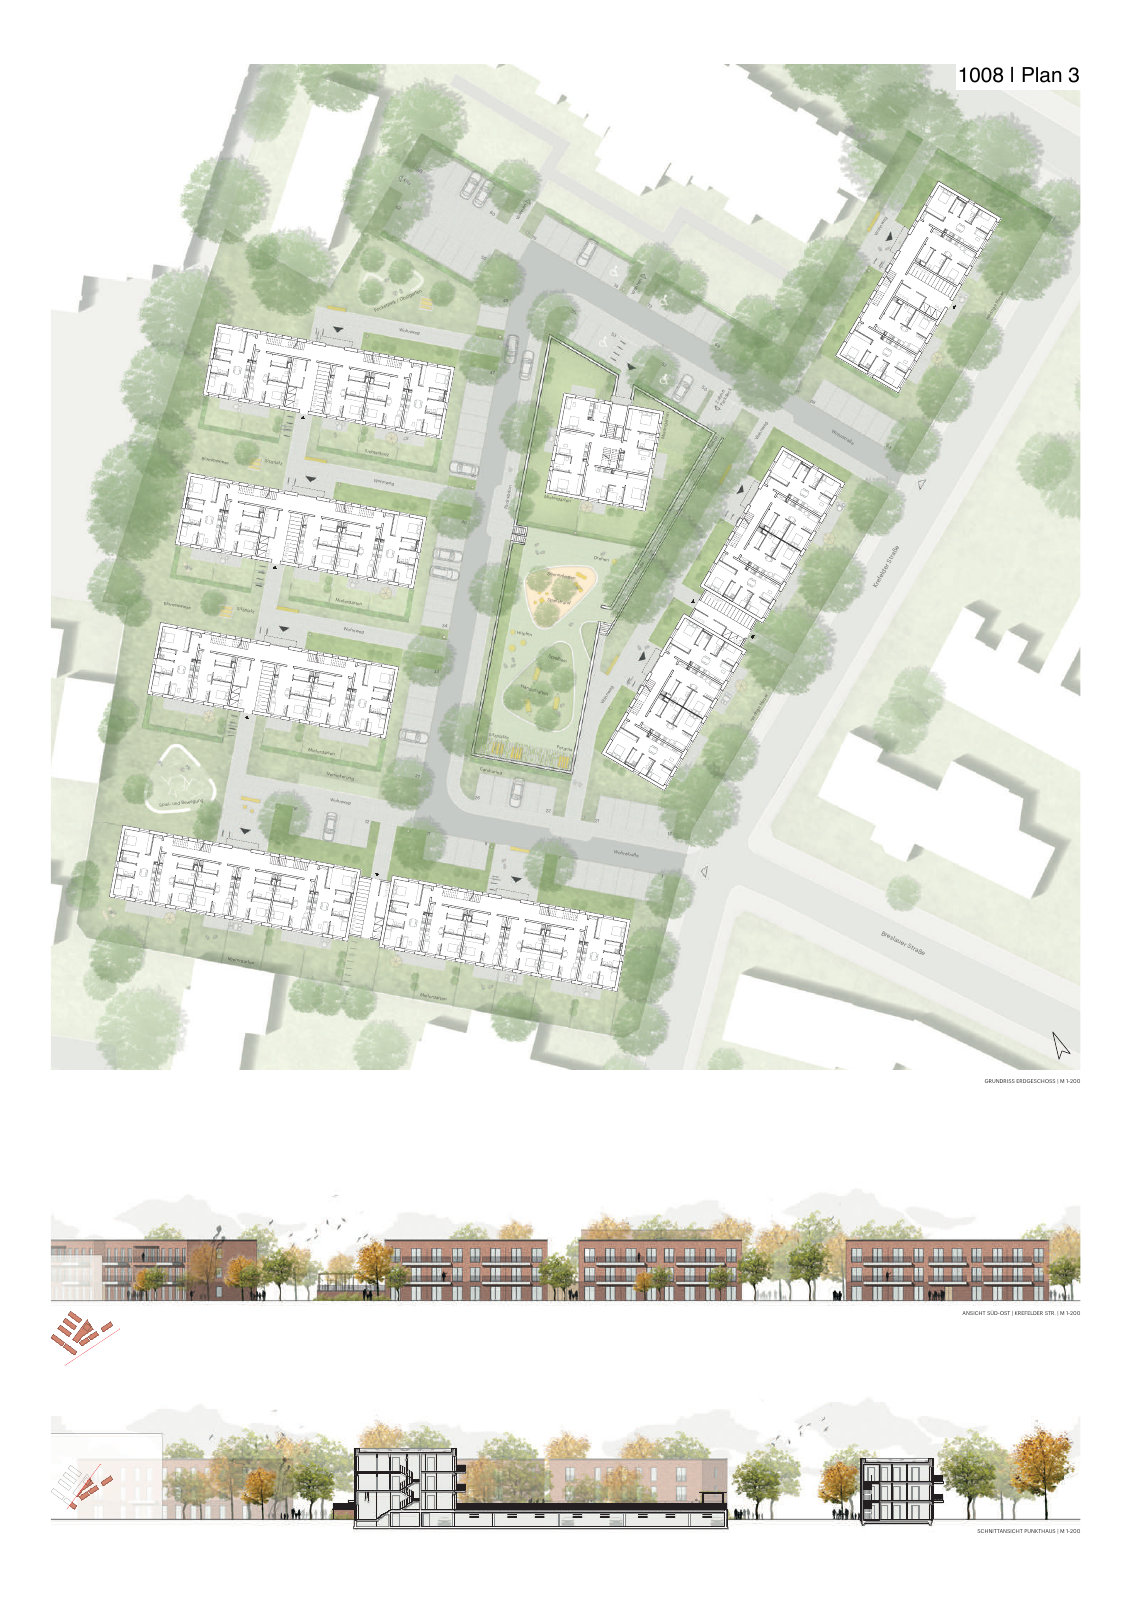 Vorschau Neubau von 100 Wohneinheiten [Nordhorn] Seite 54